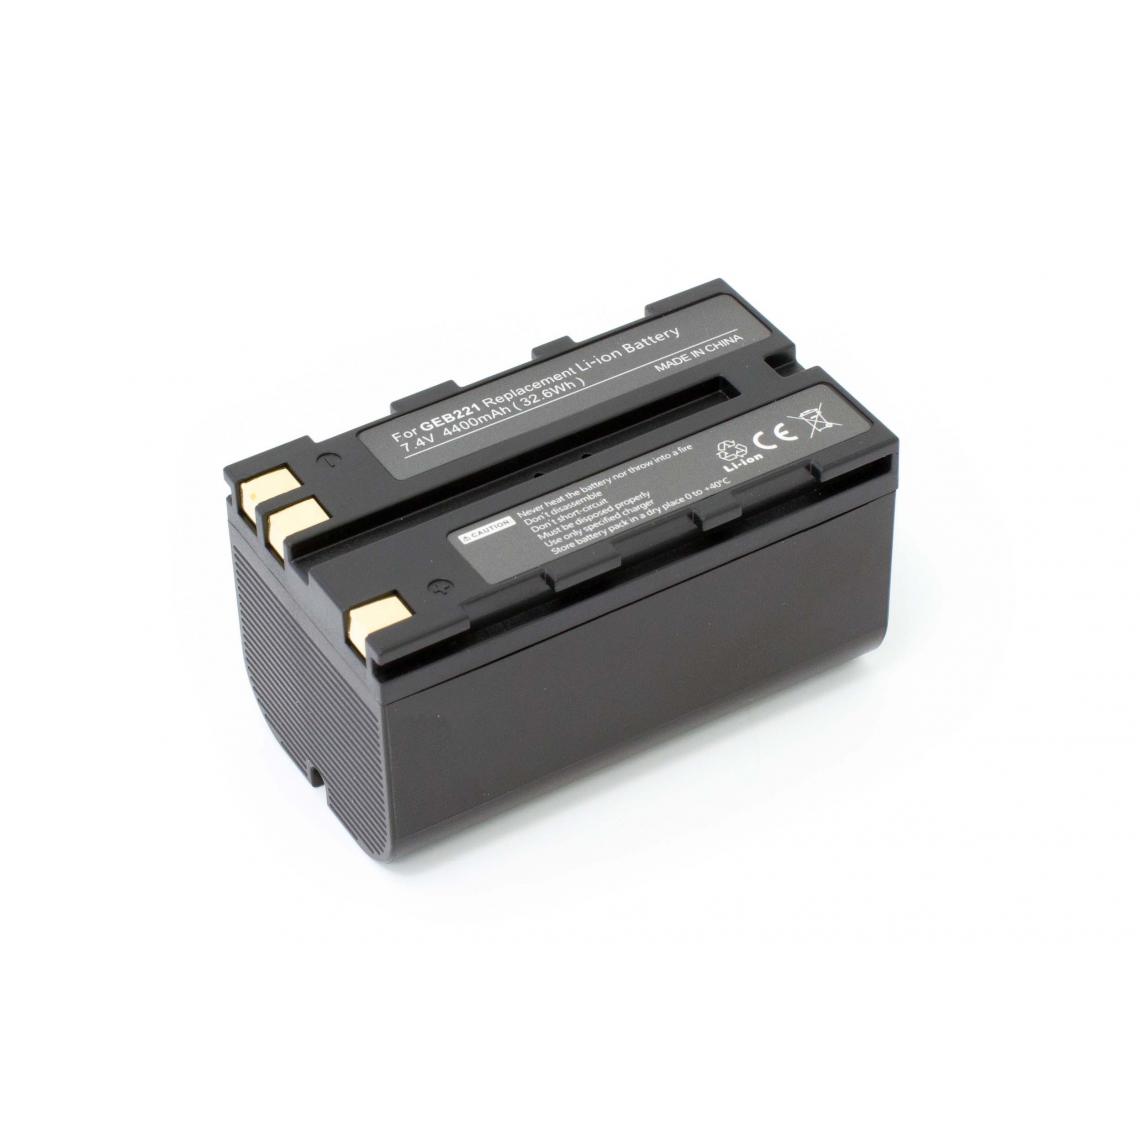 Vhbw - vhbw batterie compatible avec Leica Builder 100, 200, 300, 400, 500 appareil photo DSLR (4400mAh, 7,4V, Li-Ion) - Piles rechargeables